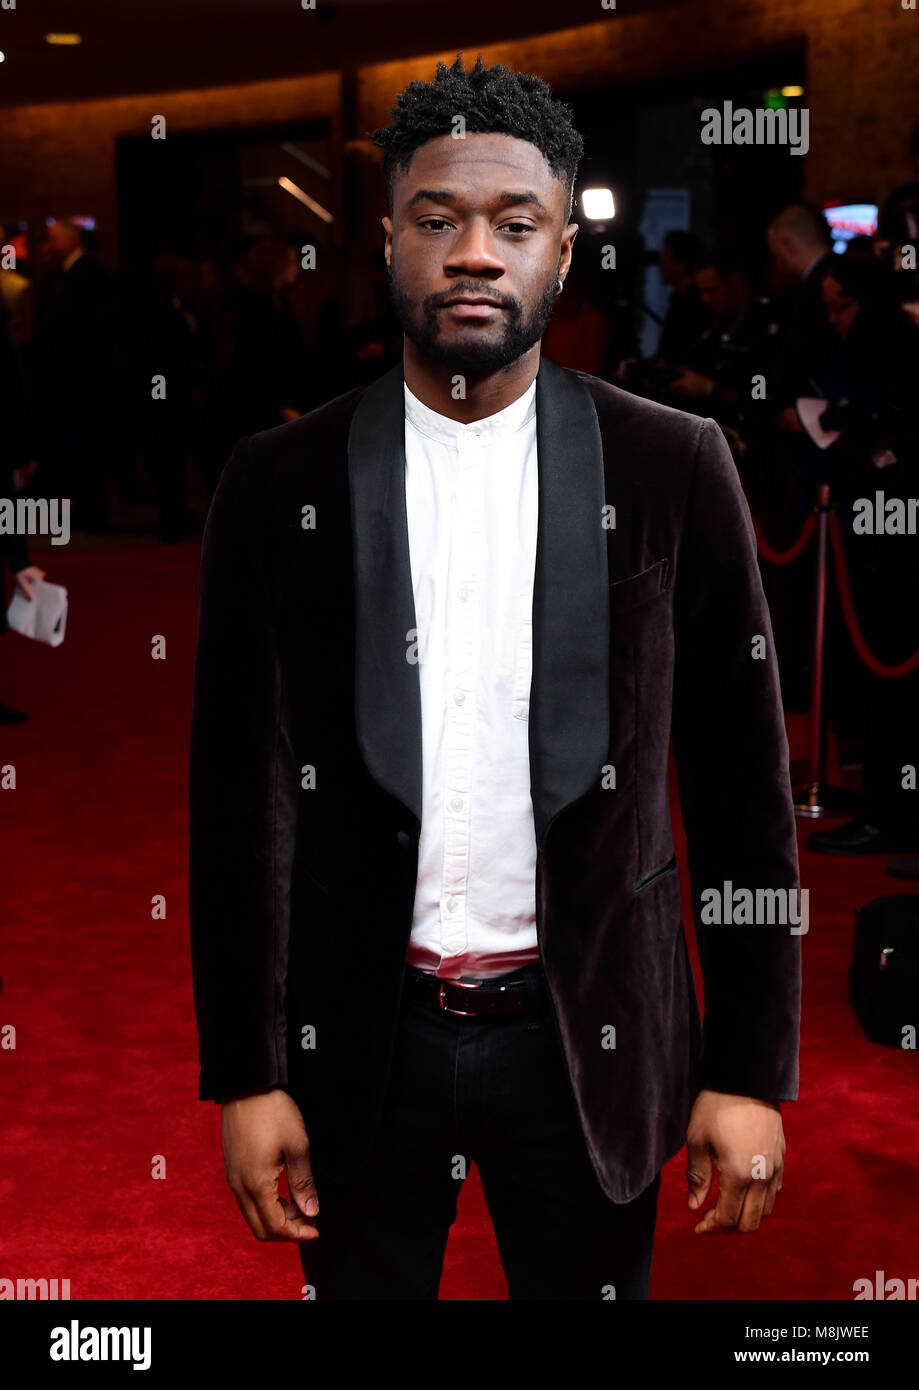 Charles Babalola assistant à la télévision Rakuten des Empire Awards 2018 au Roundhouse de Londres. Banque D'Images